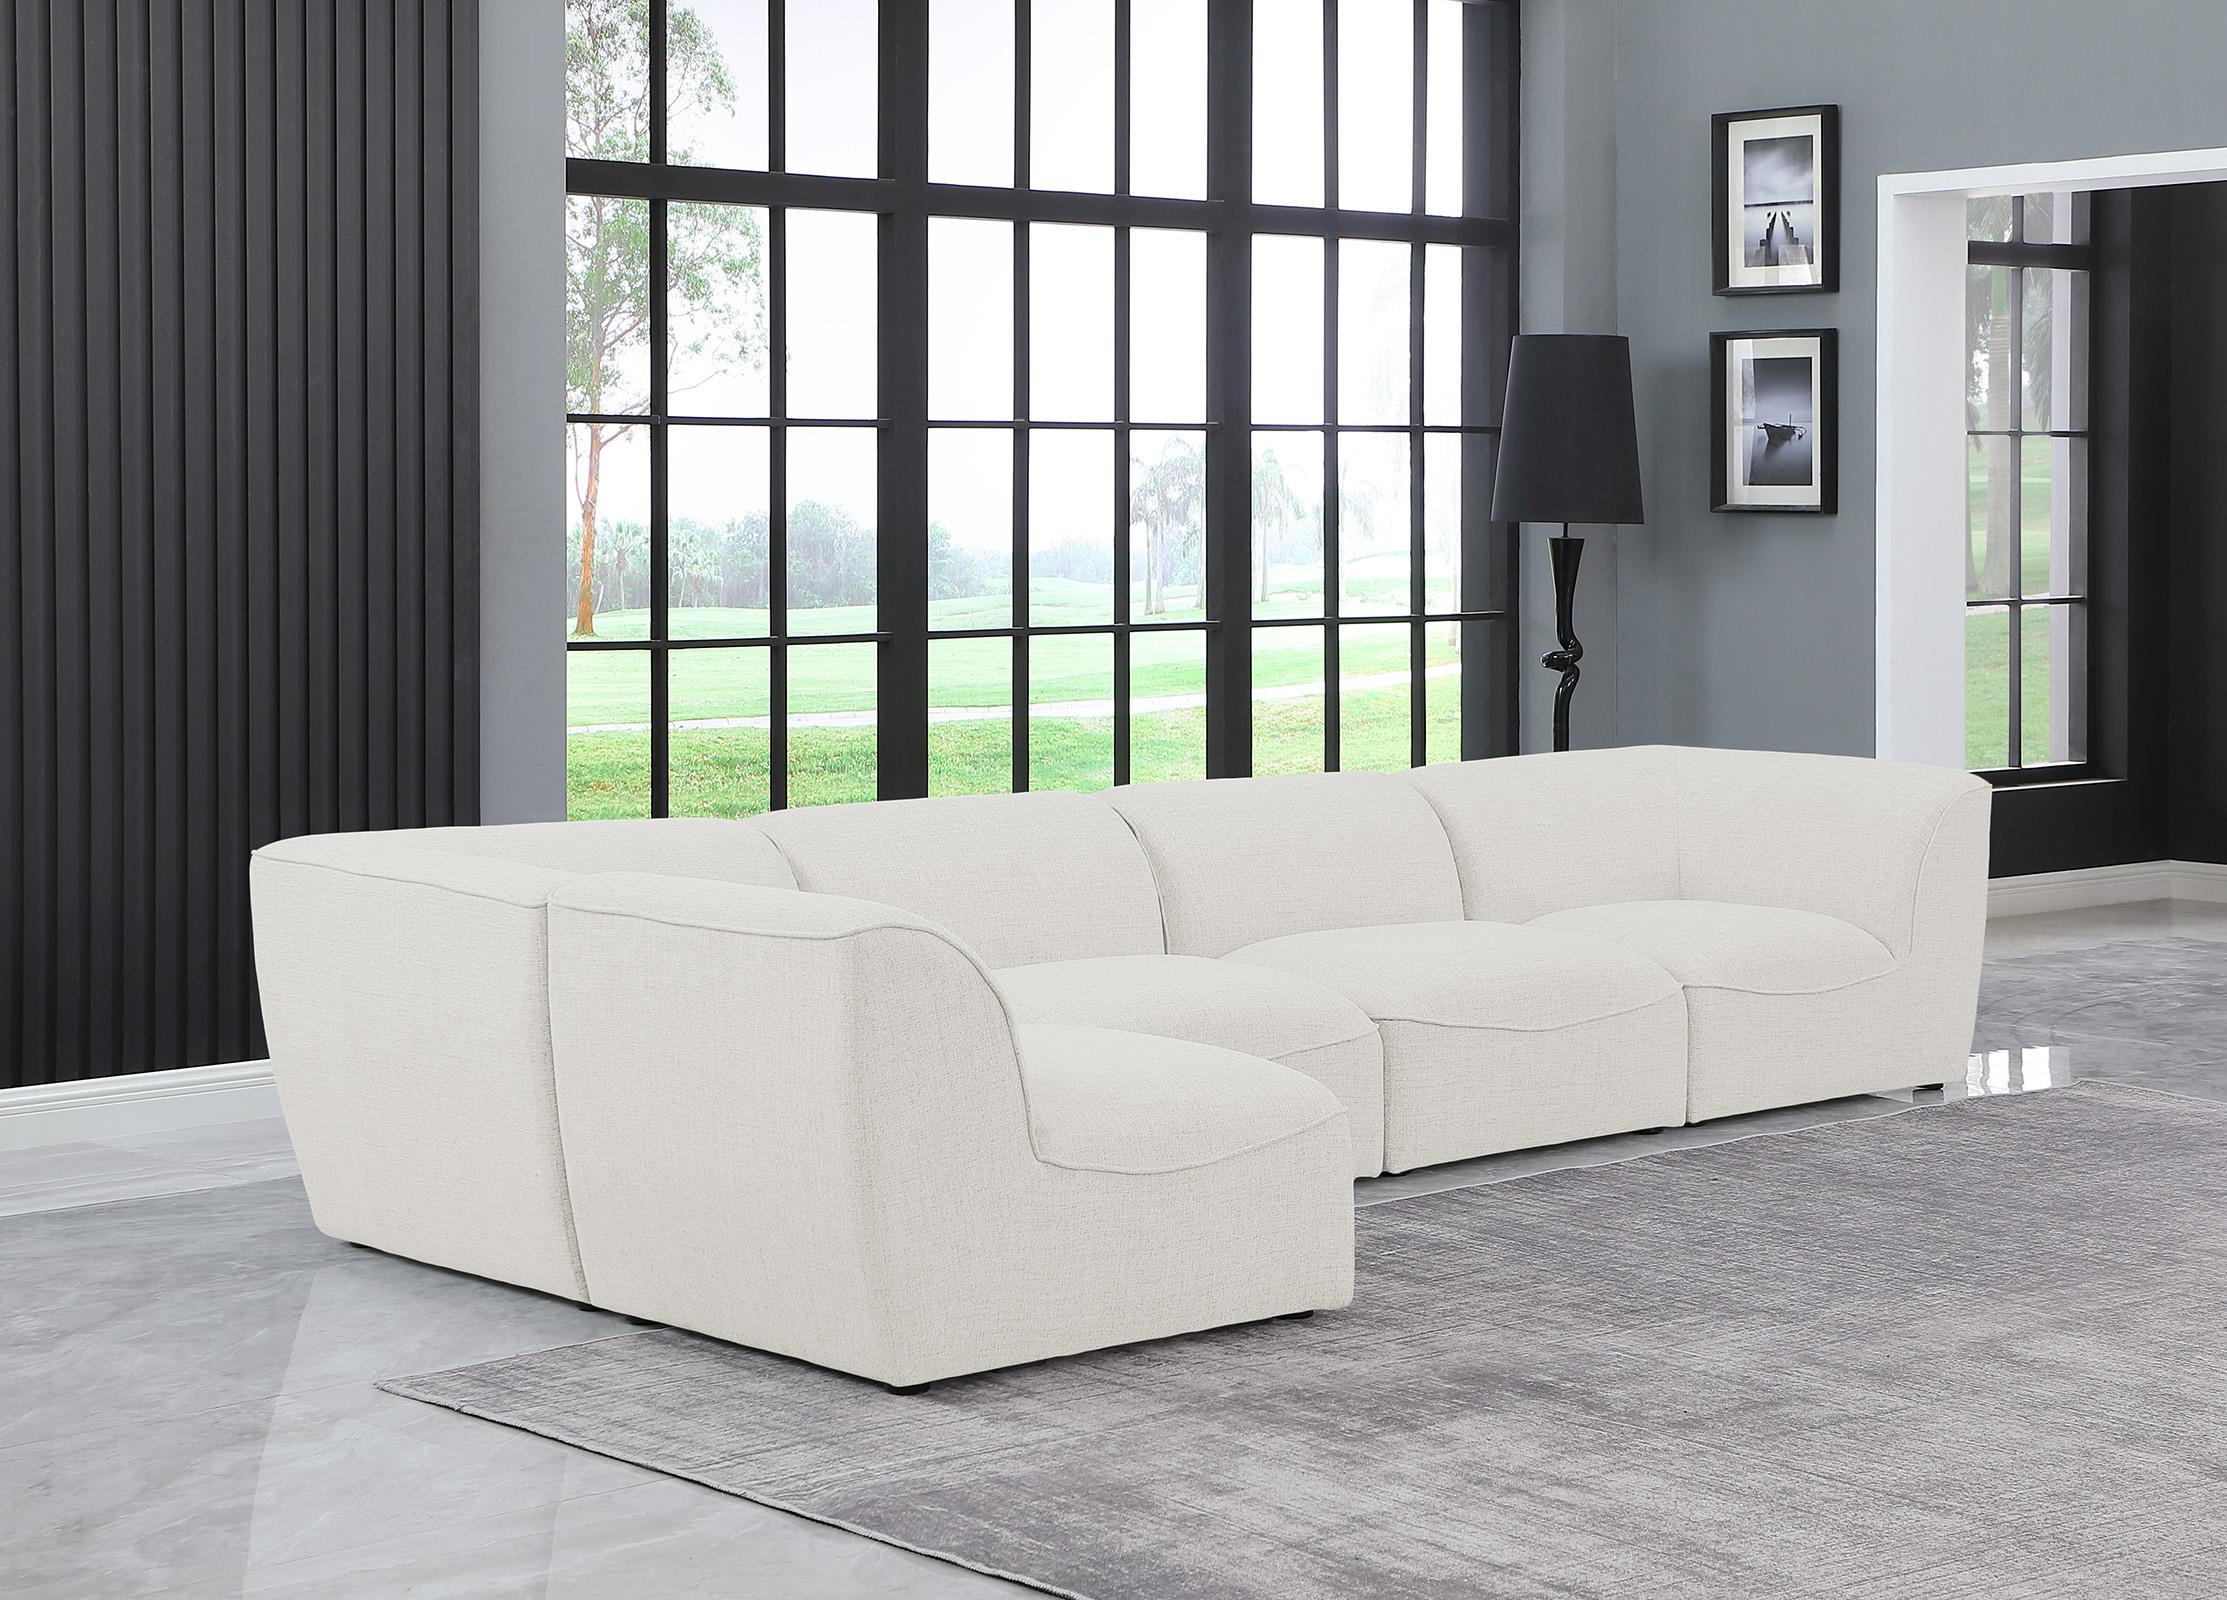 

    
Meridian Furniture MIRAMAR 683Cream-Sec5D Modular Sectional Sofa Cream 683Cream-Sec5D
